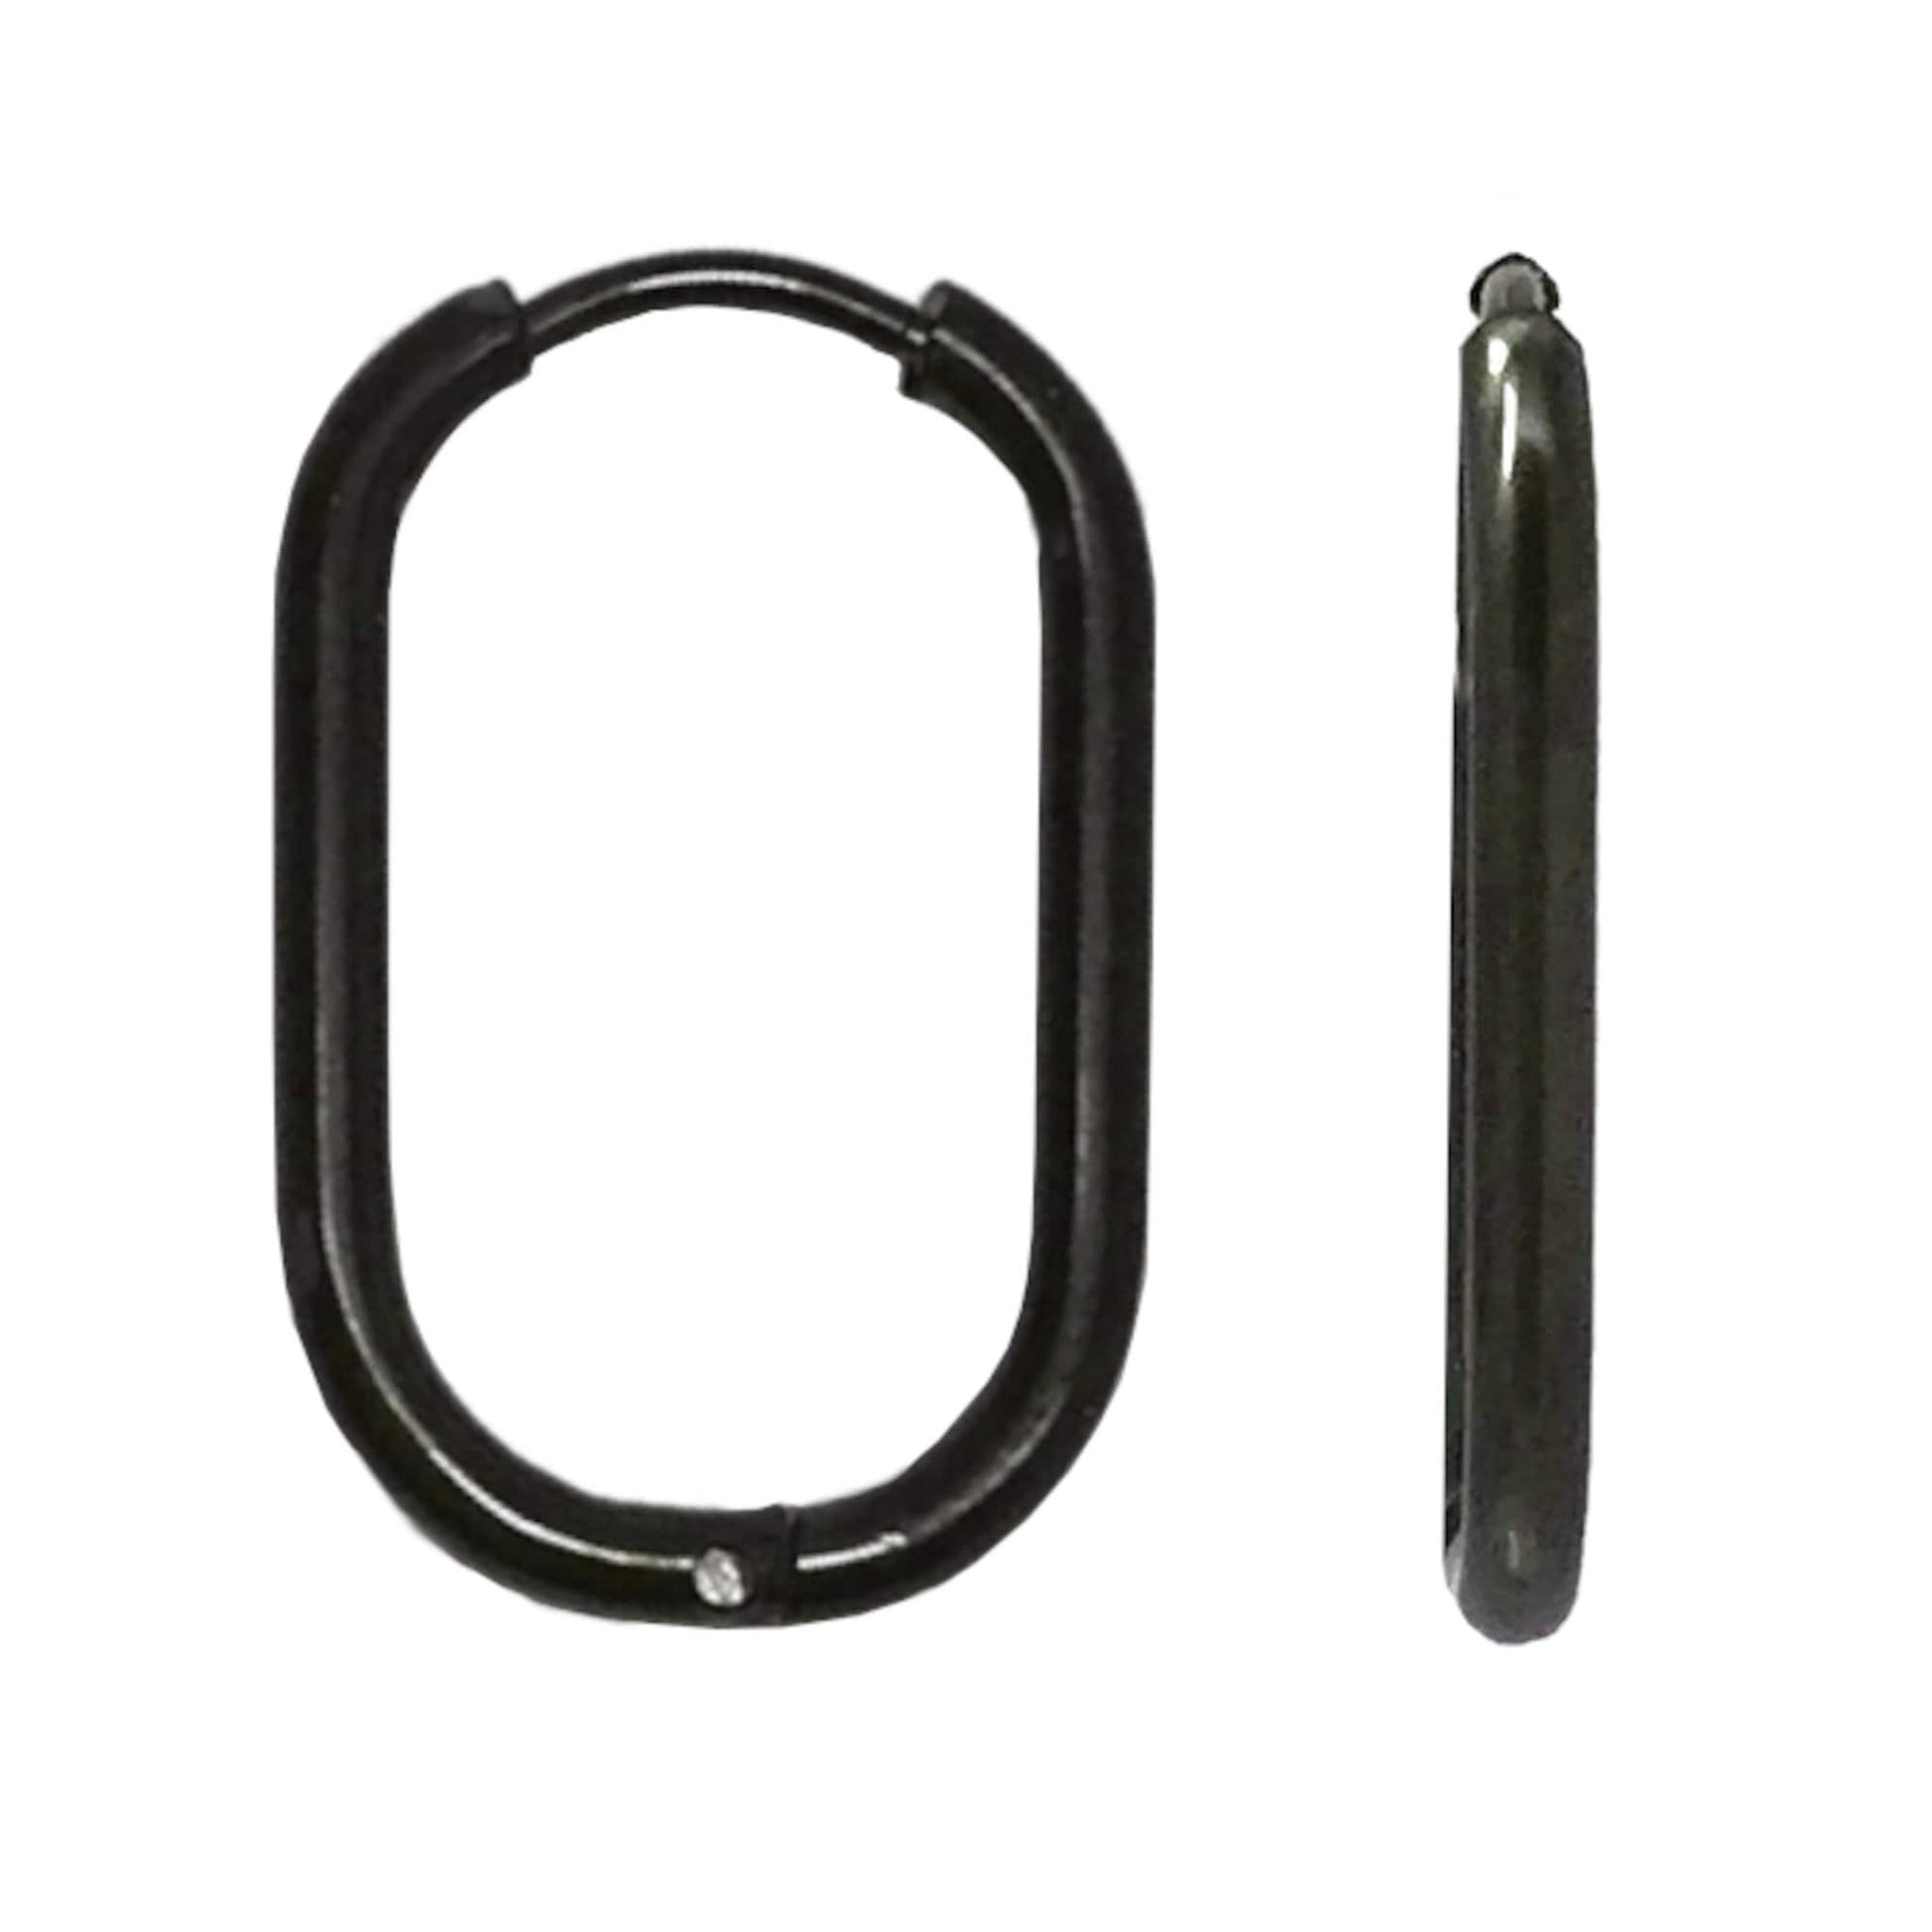 Small Black Hinged Huggie Earring, Stainless Steel Chain Link Hoop Earrings, Mini Oval Hoops, Rectangular Hoops, Minimalist Jewelry Unisex